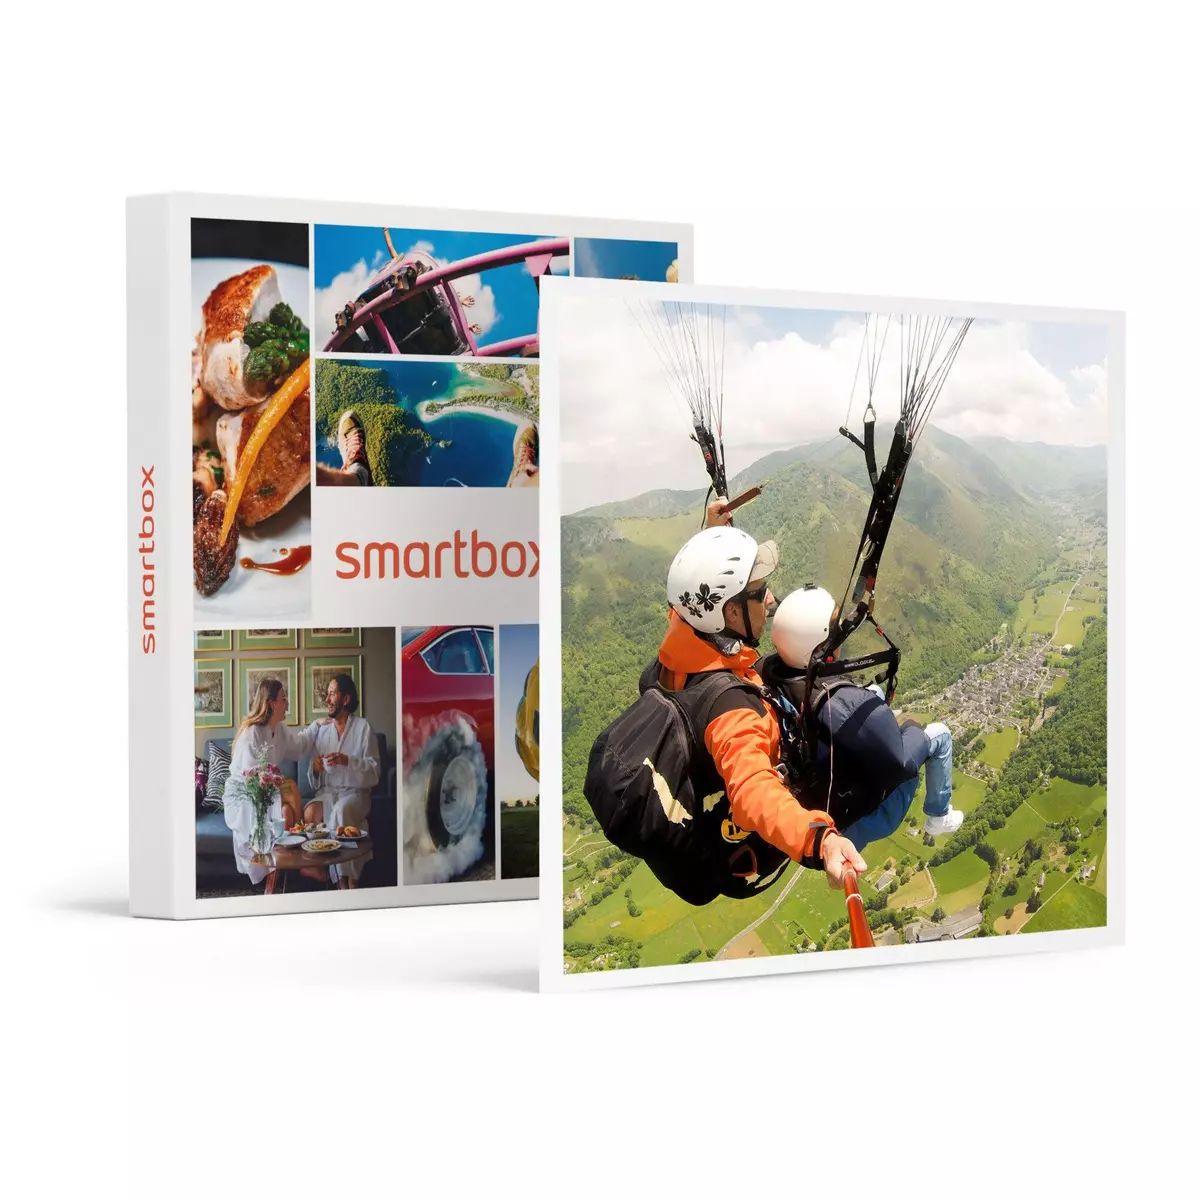 Smartbox Vol parapente en tandem de 15 min près de Lourdes - Coffret Cadeau Sport & Aventure